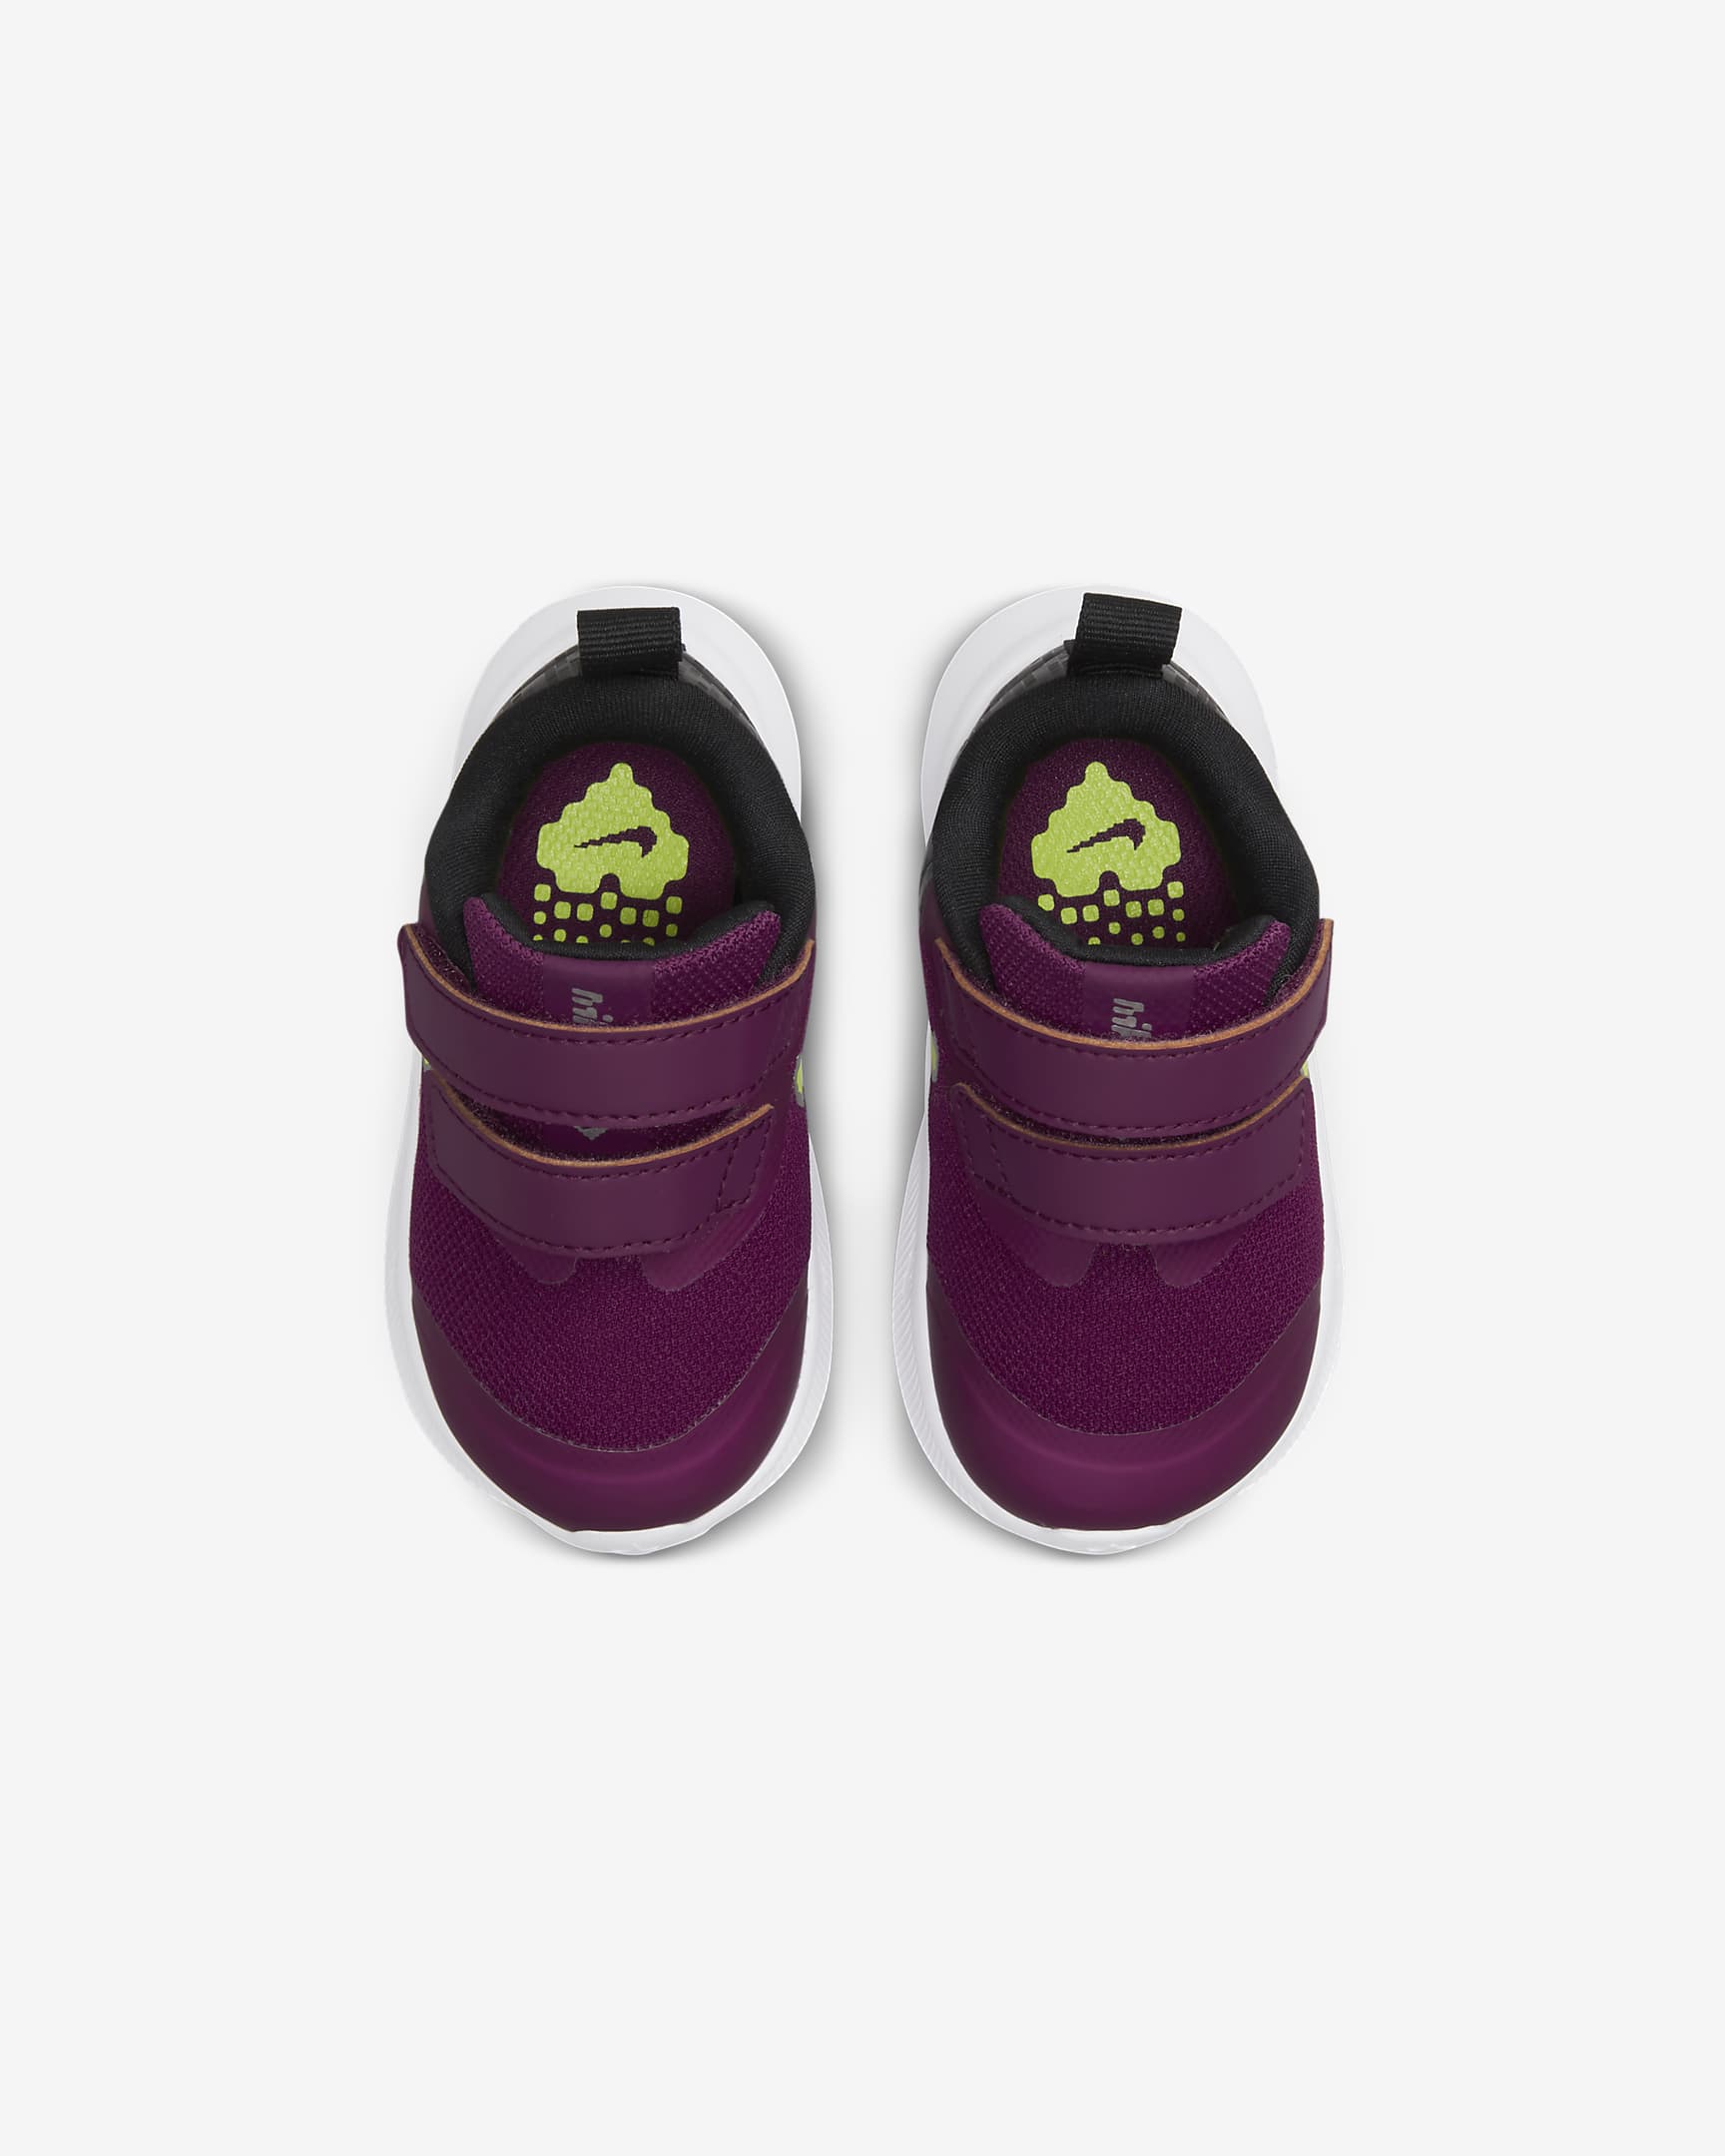 Nike Star Runner 3 SE Baby & Toddler Shoes - Sangria/Black/White/Volt